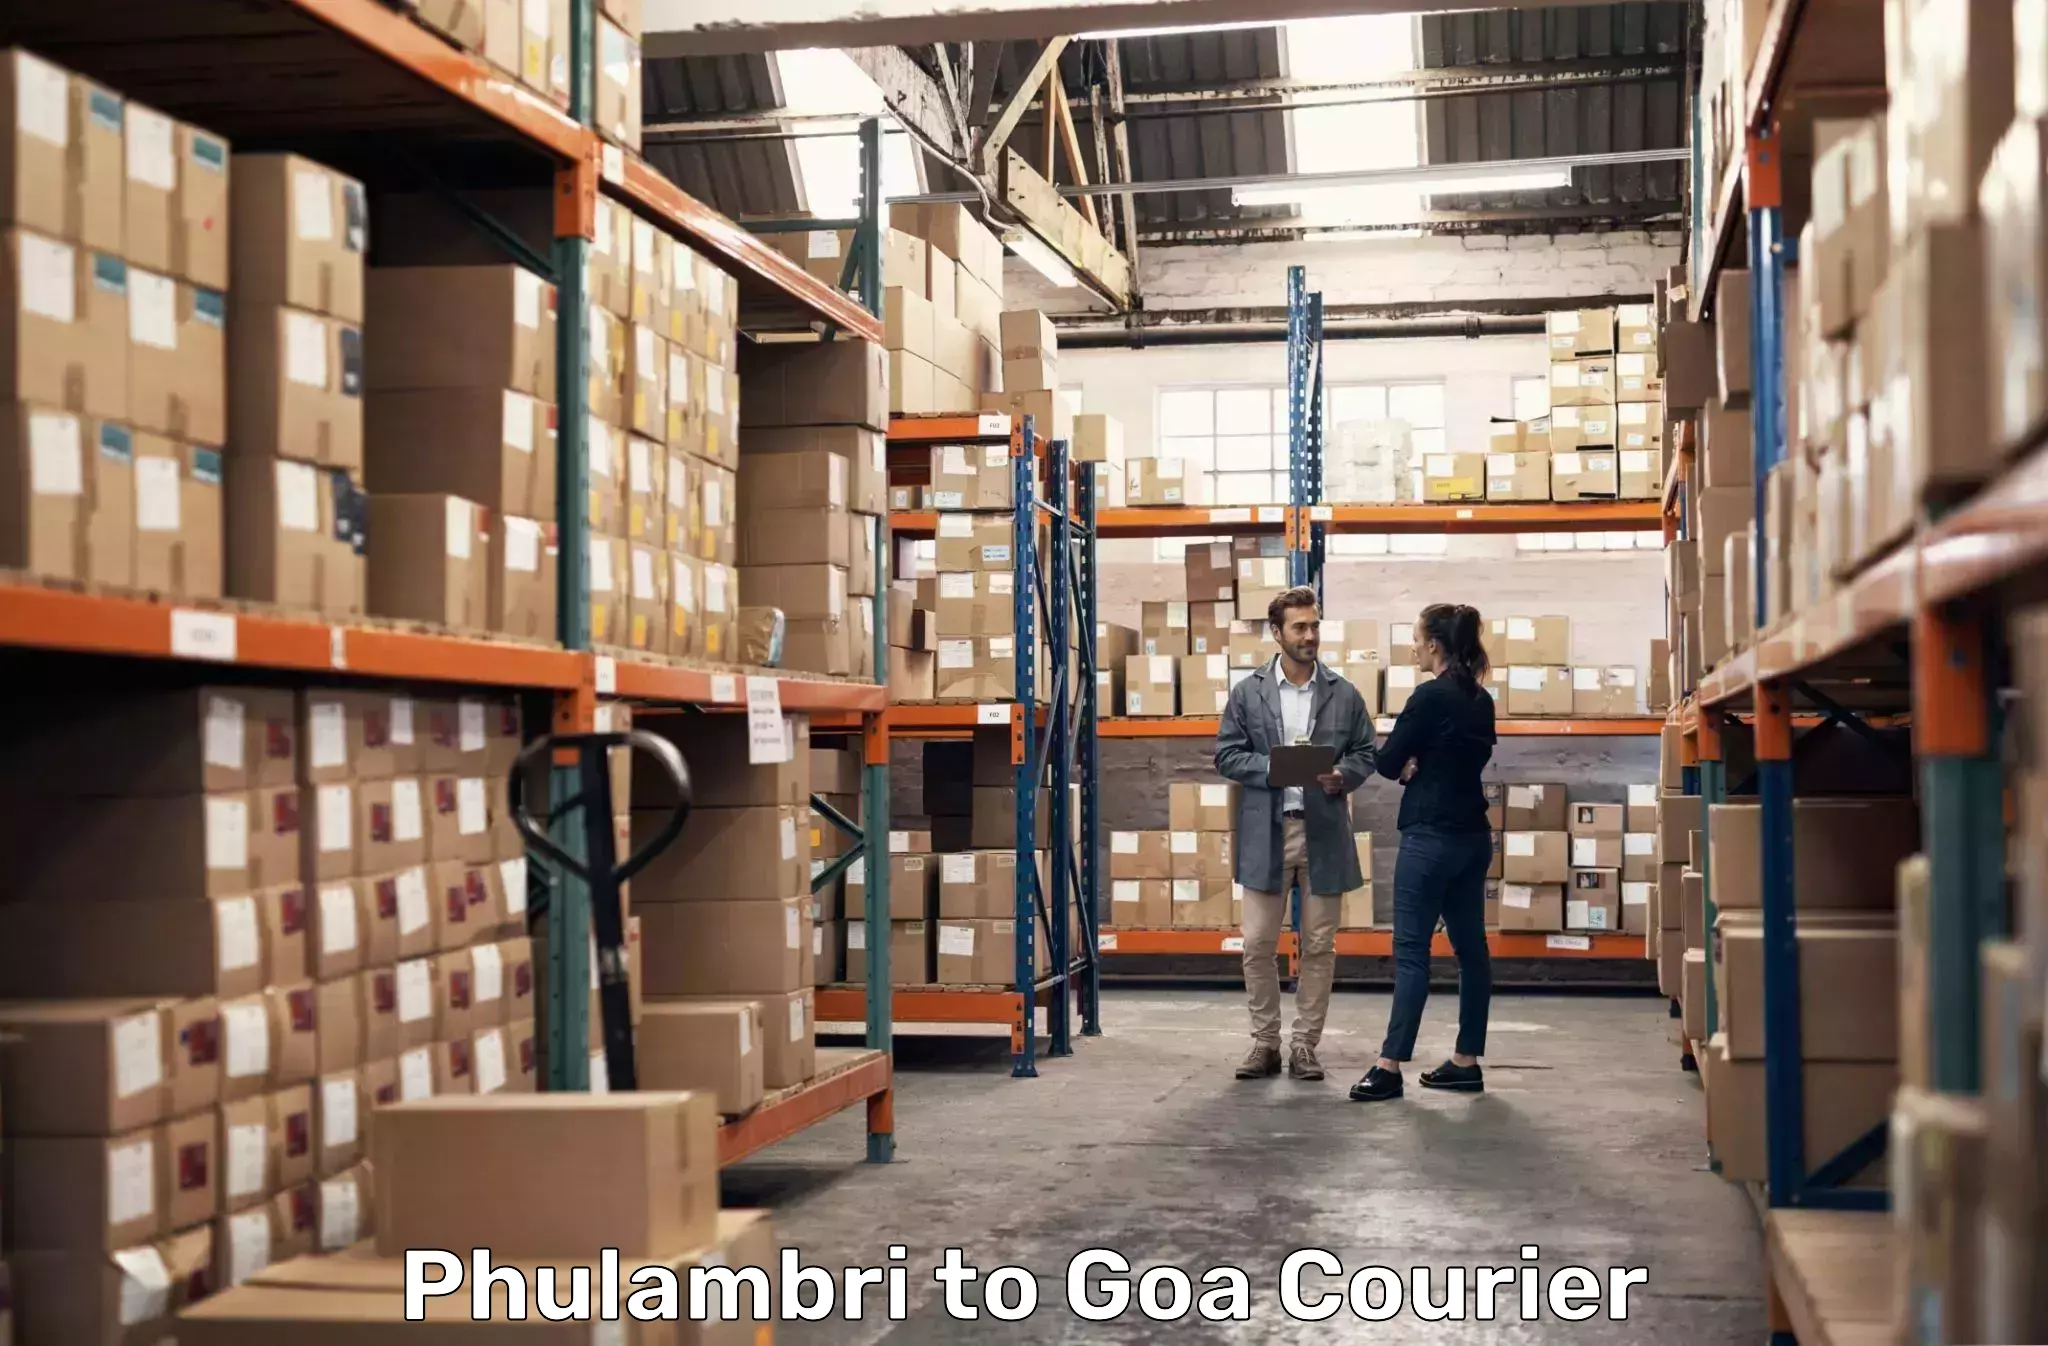 Reliable freight solutions Phulambri to Goa